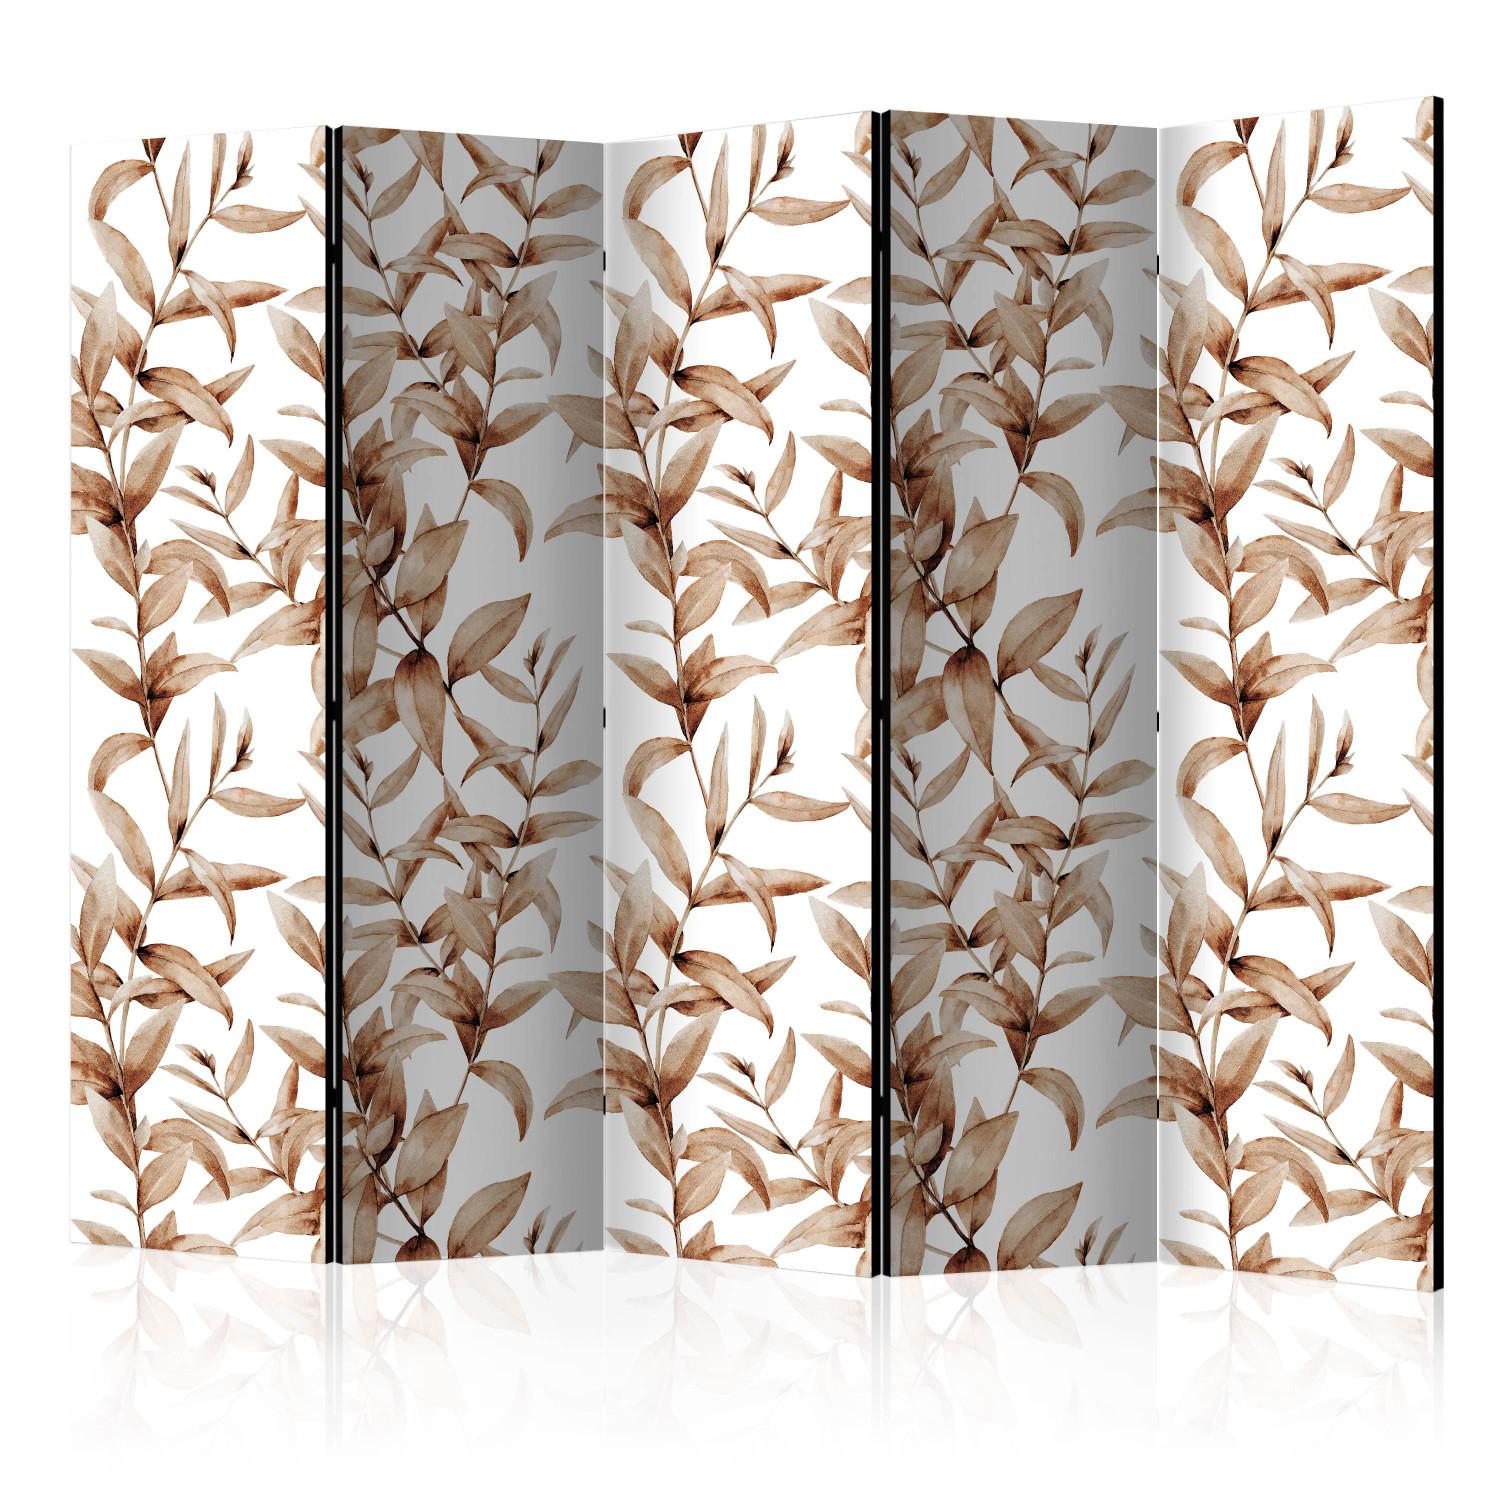 Biombo decorativo Sepia vegetal II - hojas marrones estilo ornamental fondo blanco